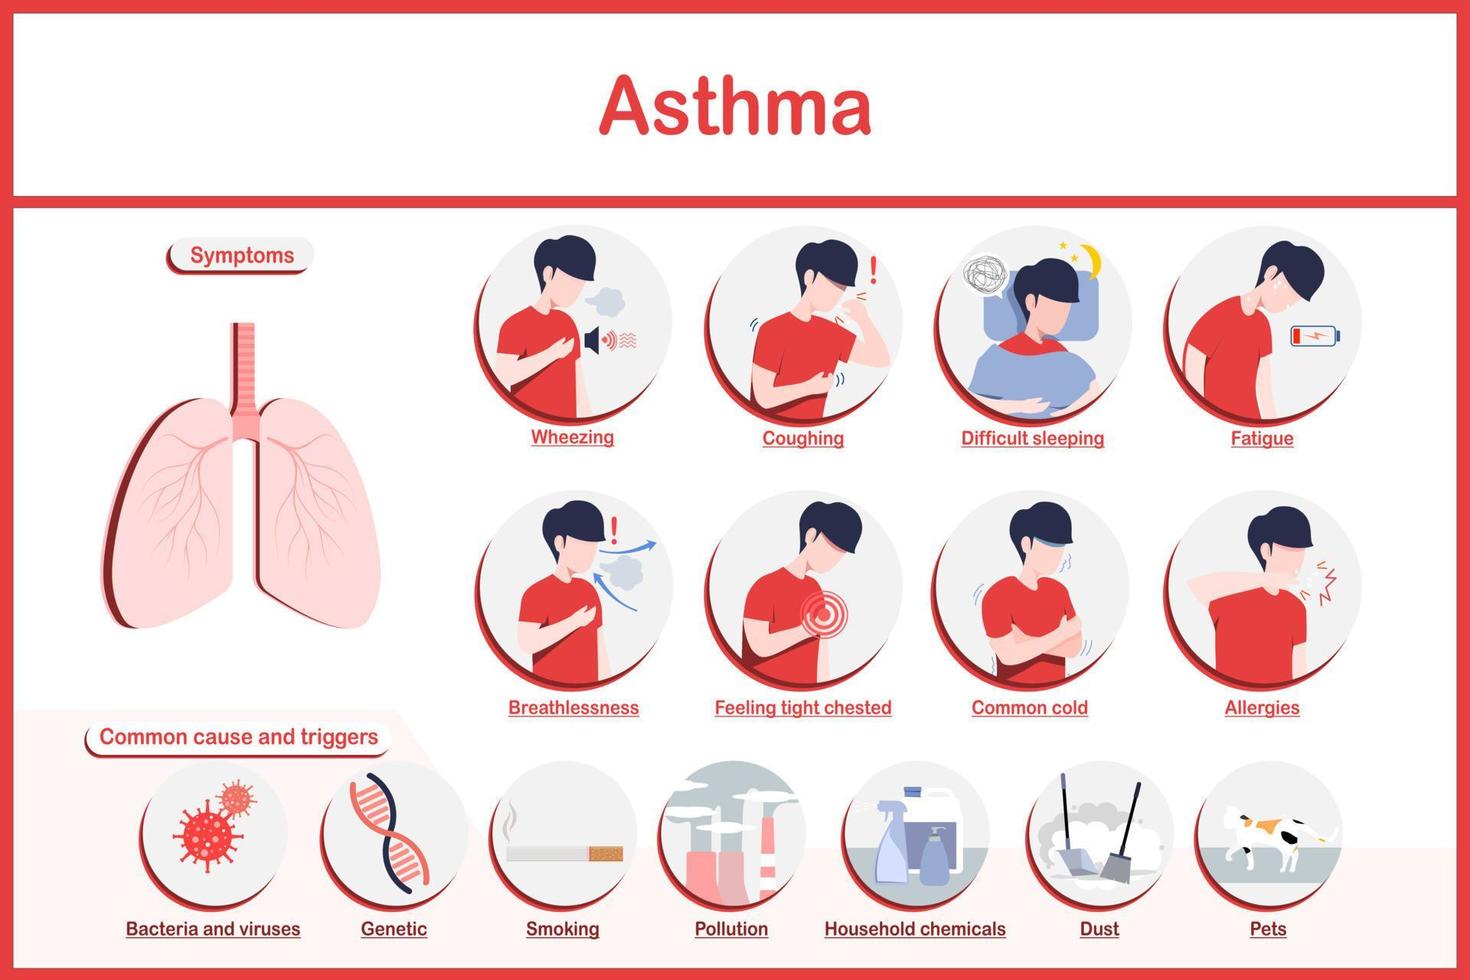 vetor ilustrações infográfico, sintomas do asma.fadiga,chiado no peito,tosse,peito dor, comum frio, falta de ar e difícil dormindo e a a maioria comum causas do asma.flat estilo.